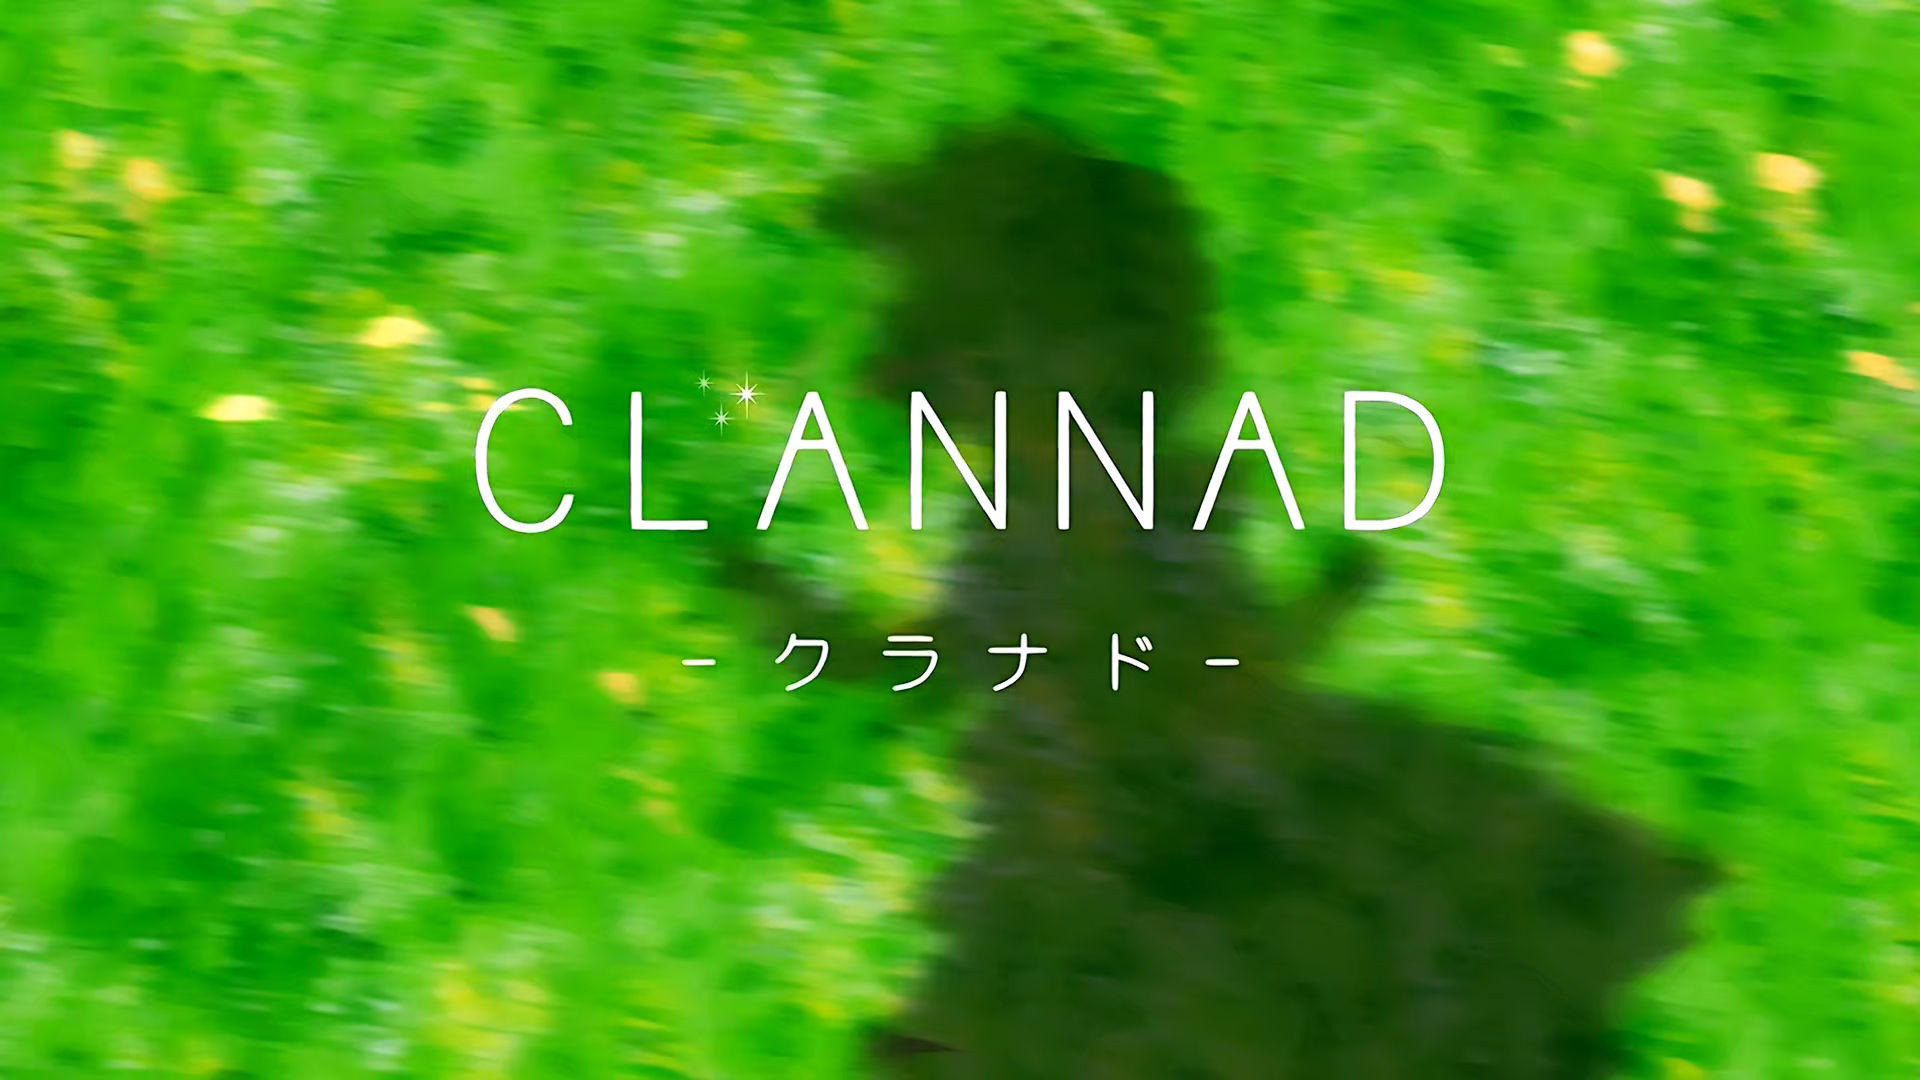 Anime 1920x1080 Clannad anime green